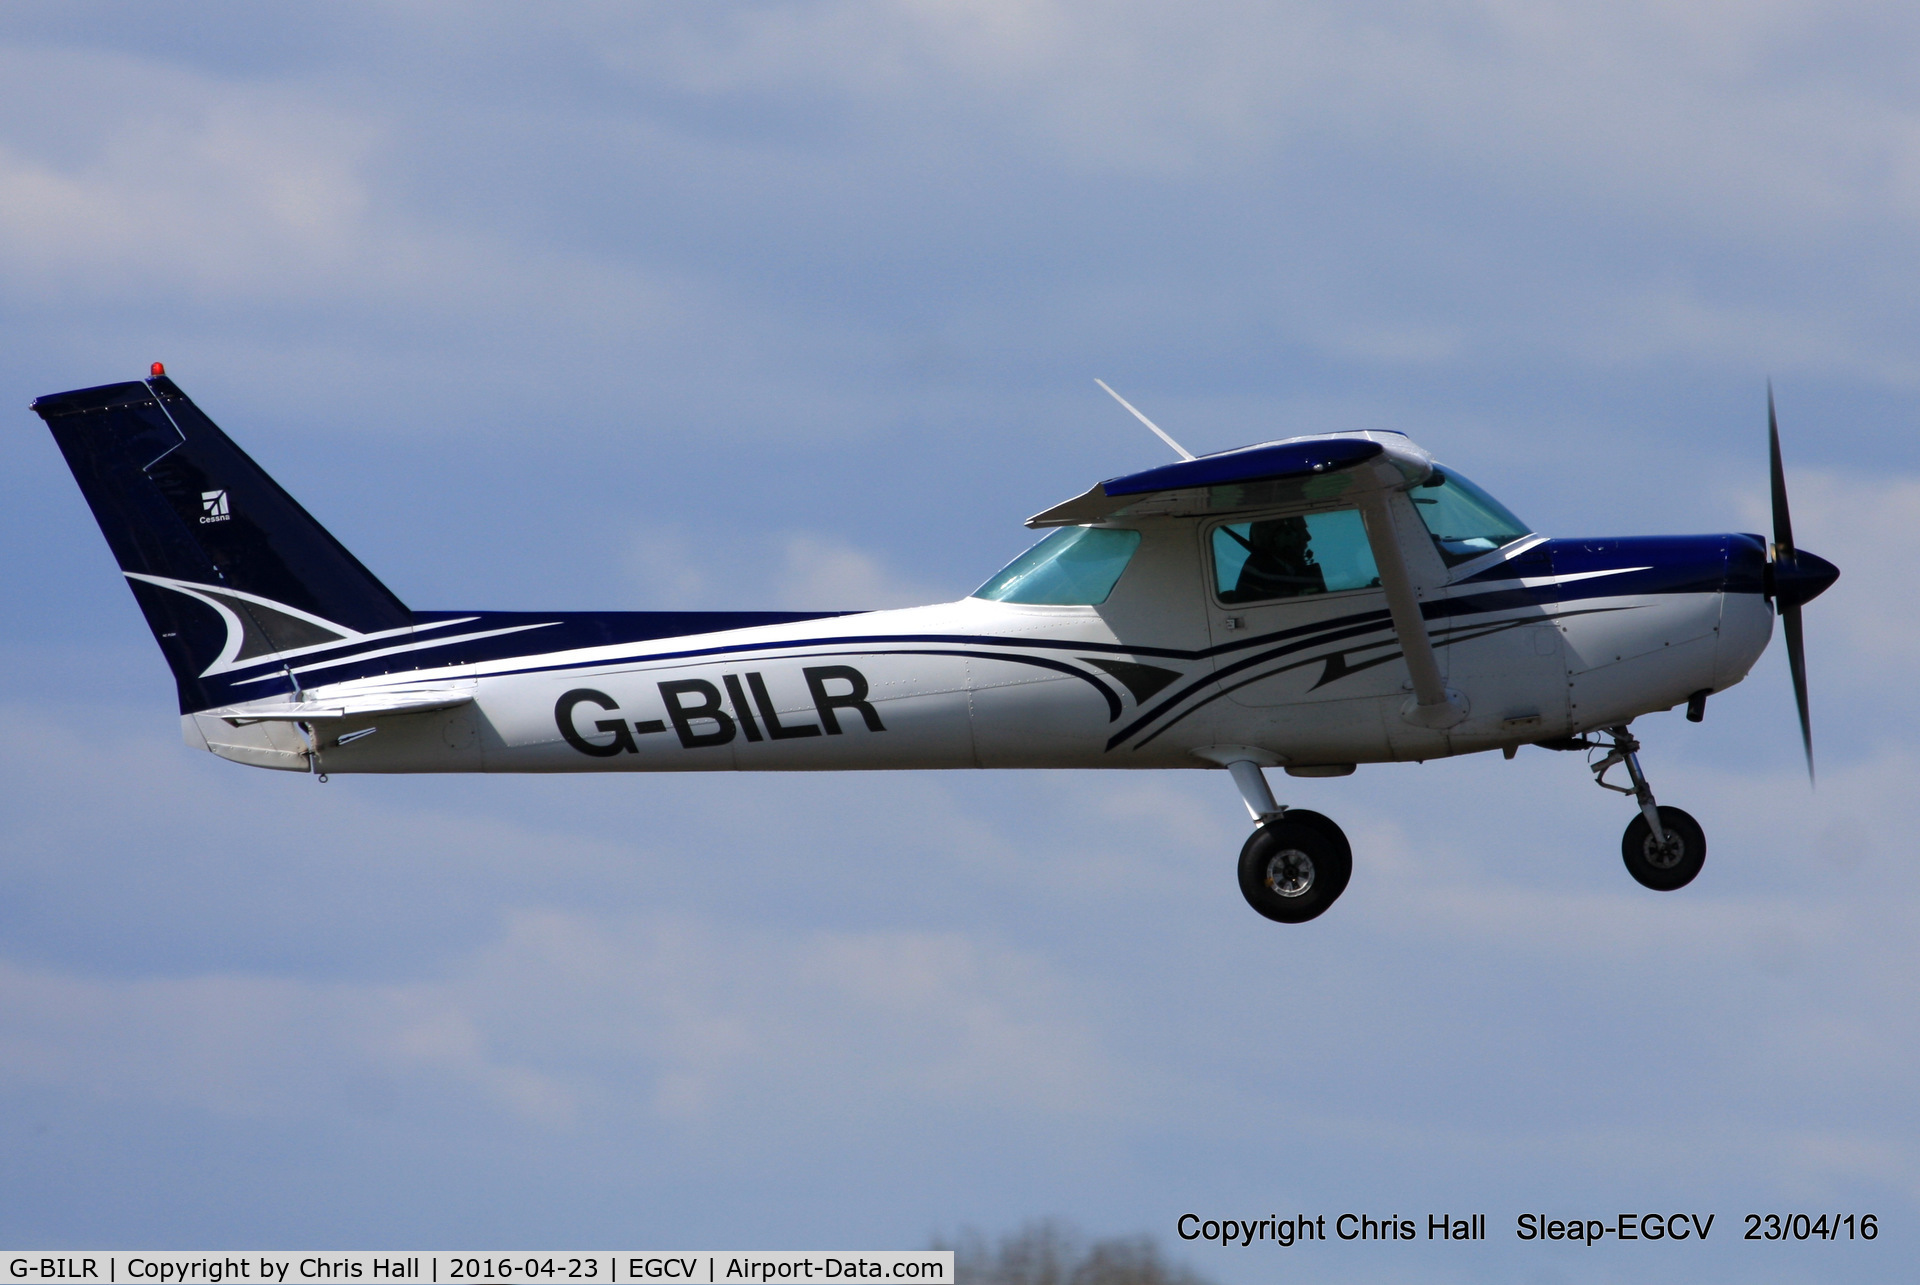 G-BILR, 1981 Cessna 152 C/N 152-84822, at Sleap